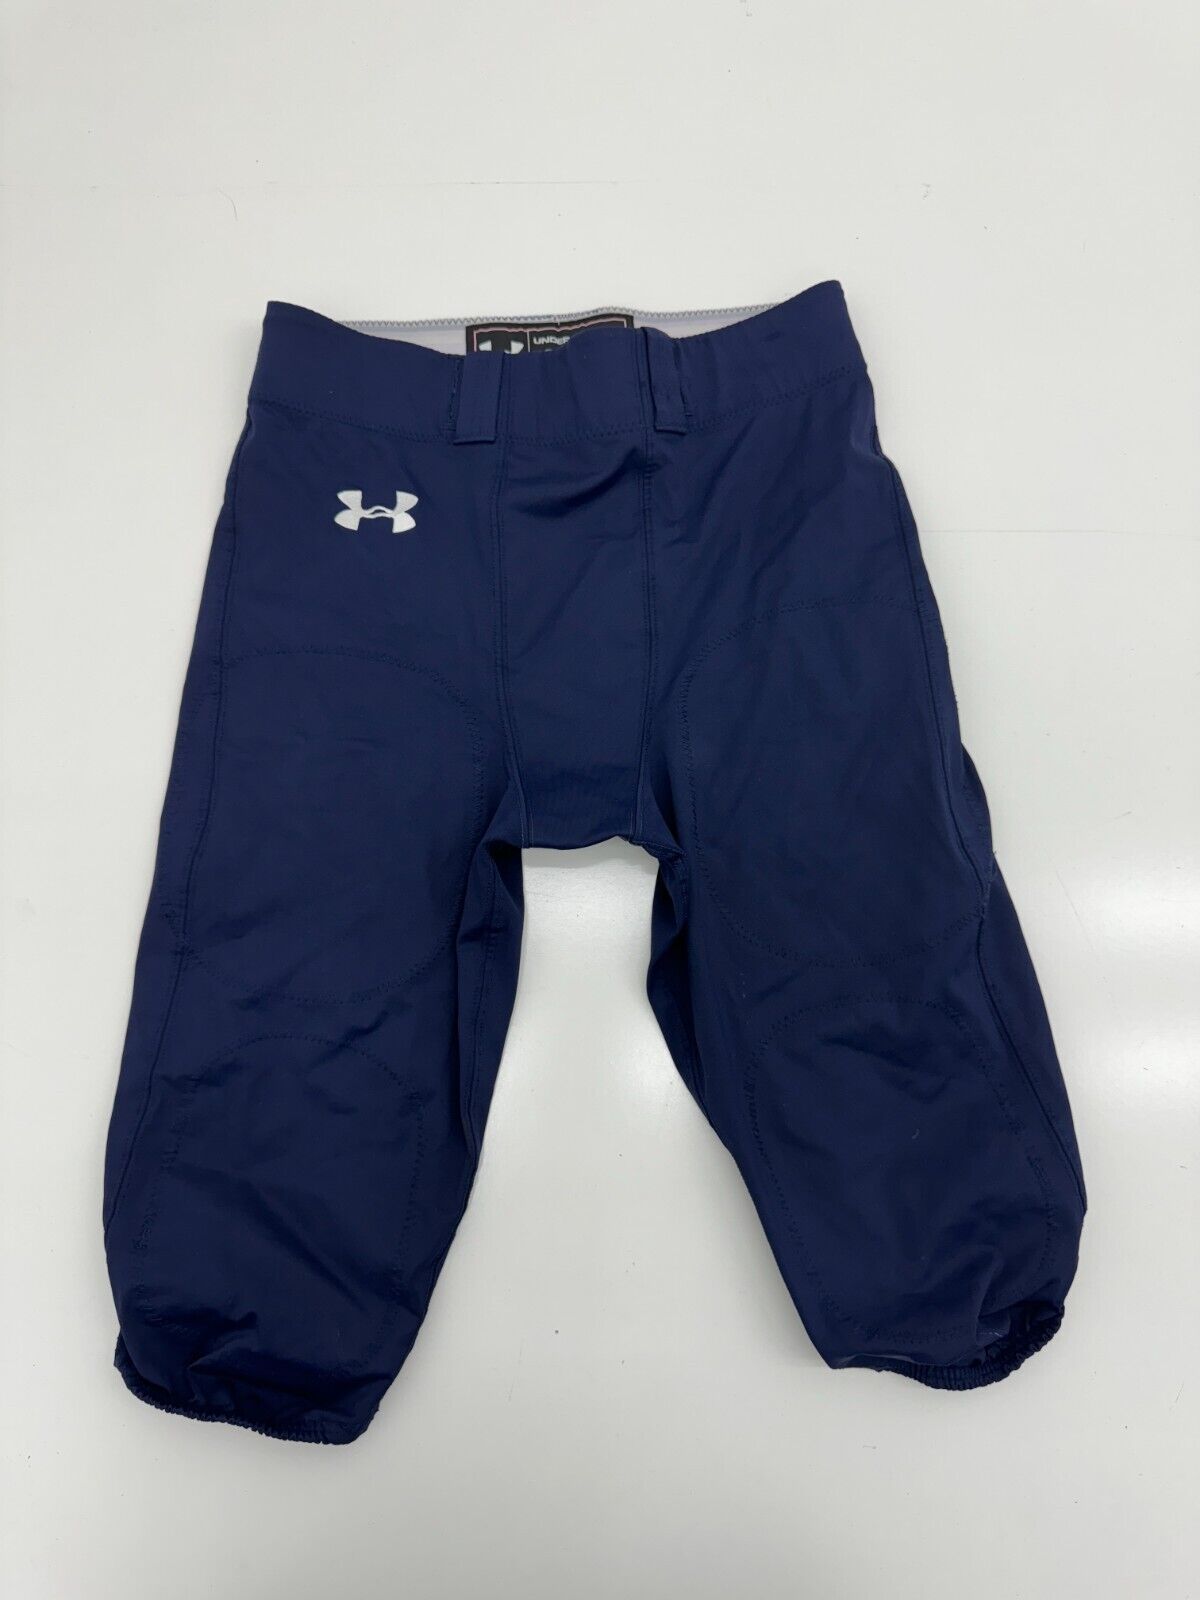 Under Armour Boys Navy Blue Football Pants Size XL